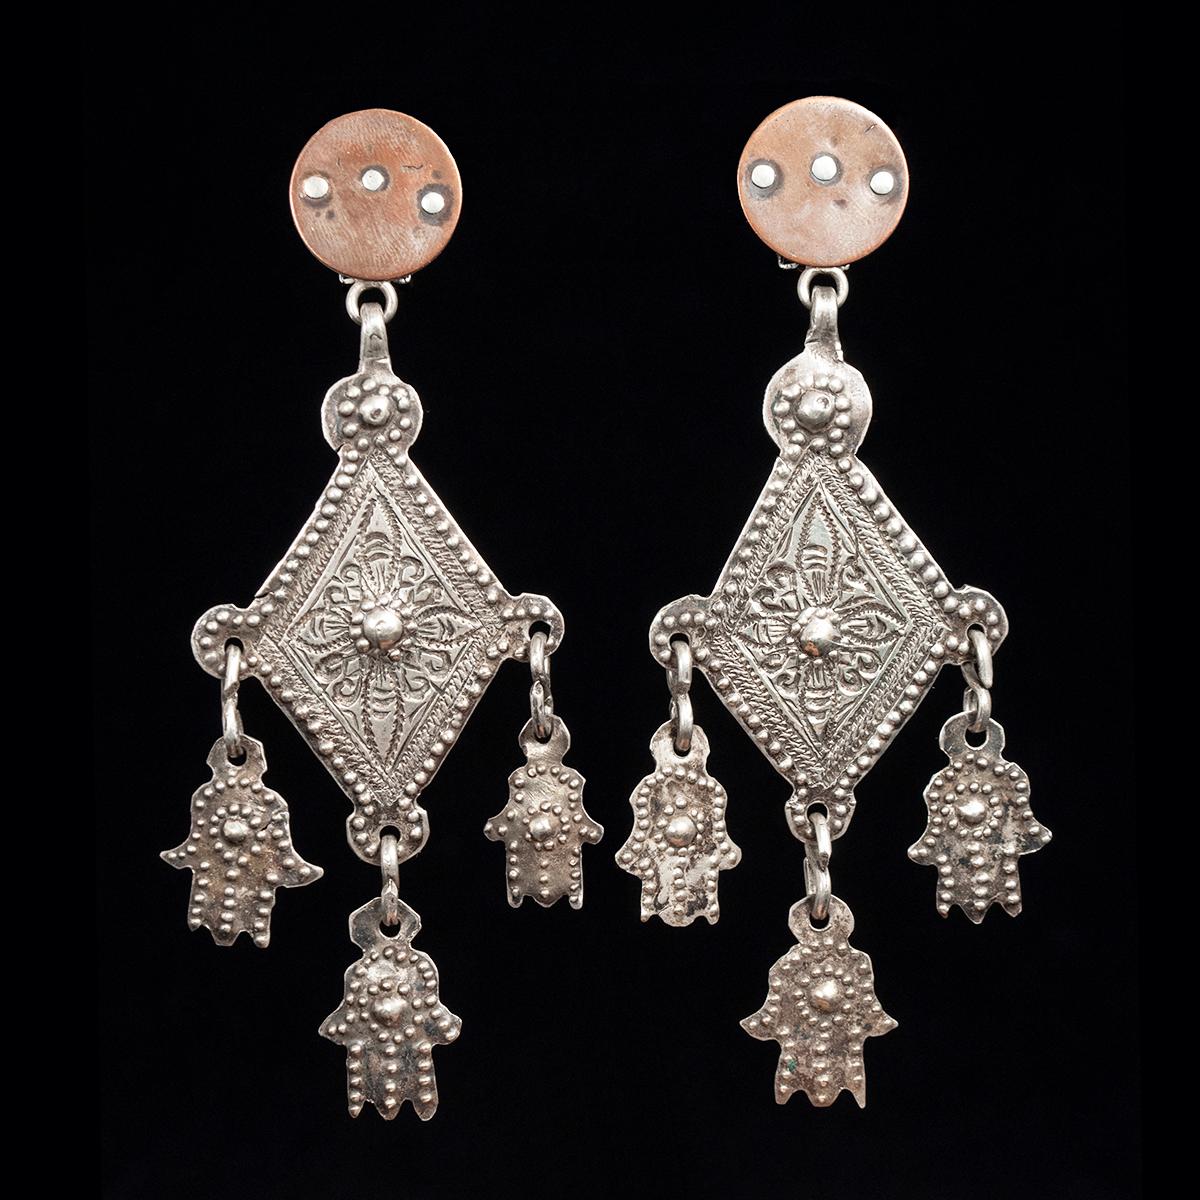 Mid-20th Century Silber Khamsa und Kupfer Ohrringe von Jewels of Santa Fe/Marrakesh

Ein Paar Ohrringe von Jewell mit Anhängern aus ländlichen marokkanischen Dörfern mit drei kleinen Khamsas, die an ihren charakteristischen handgefertigten Scheiben